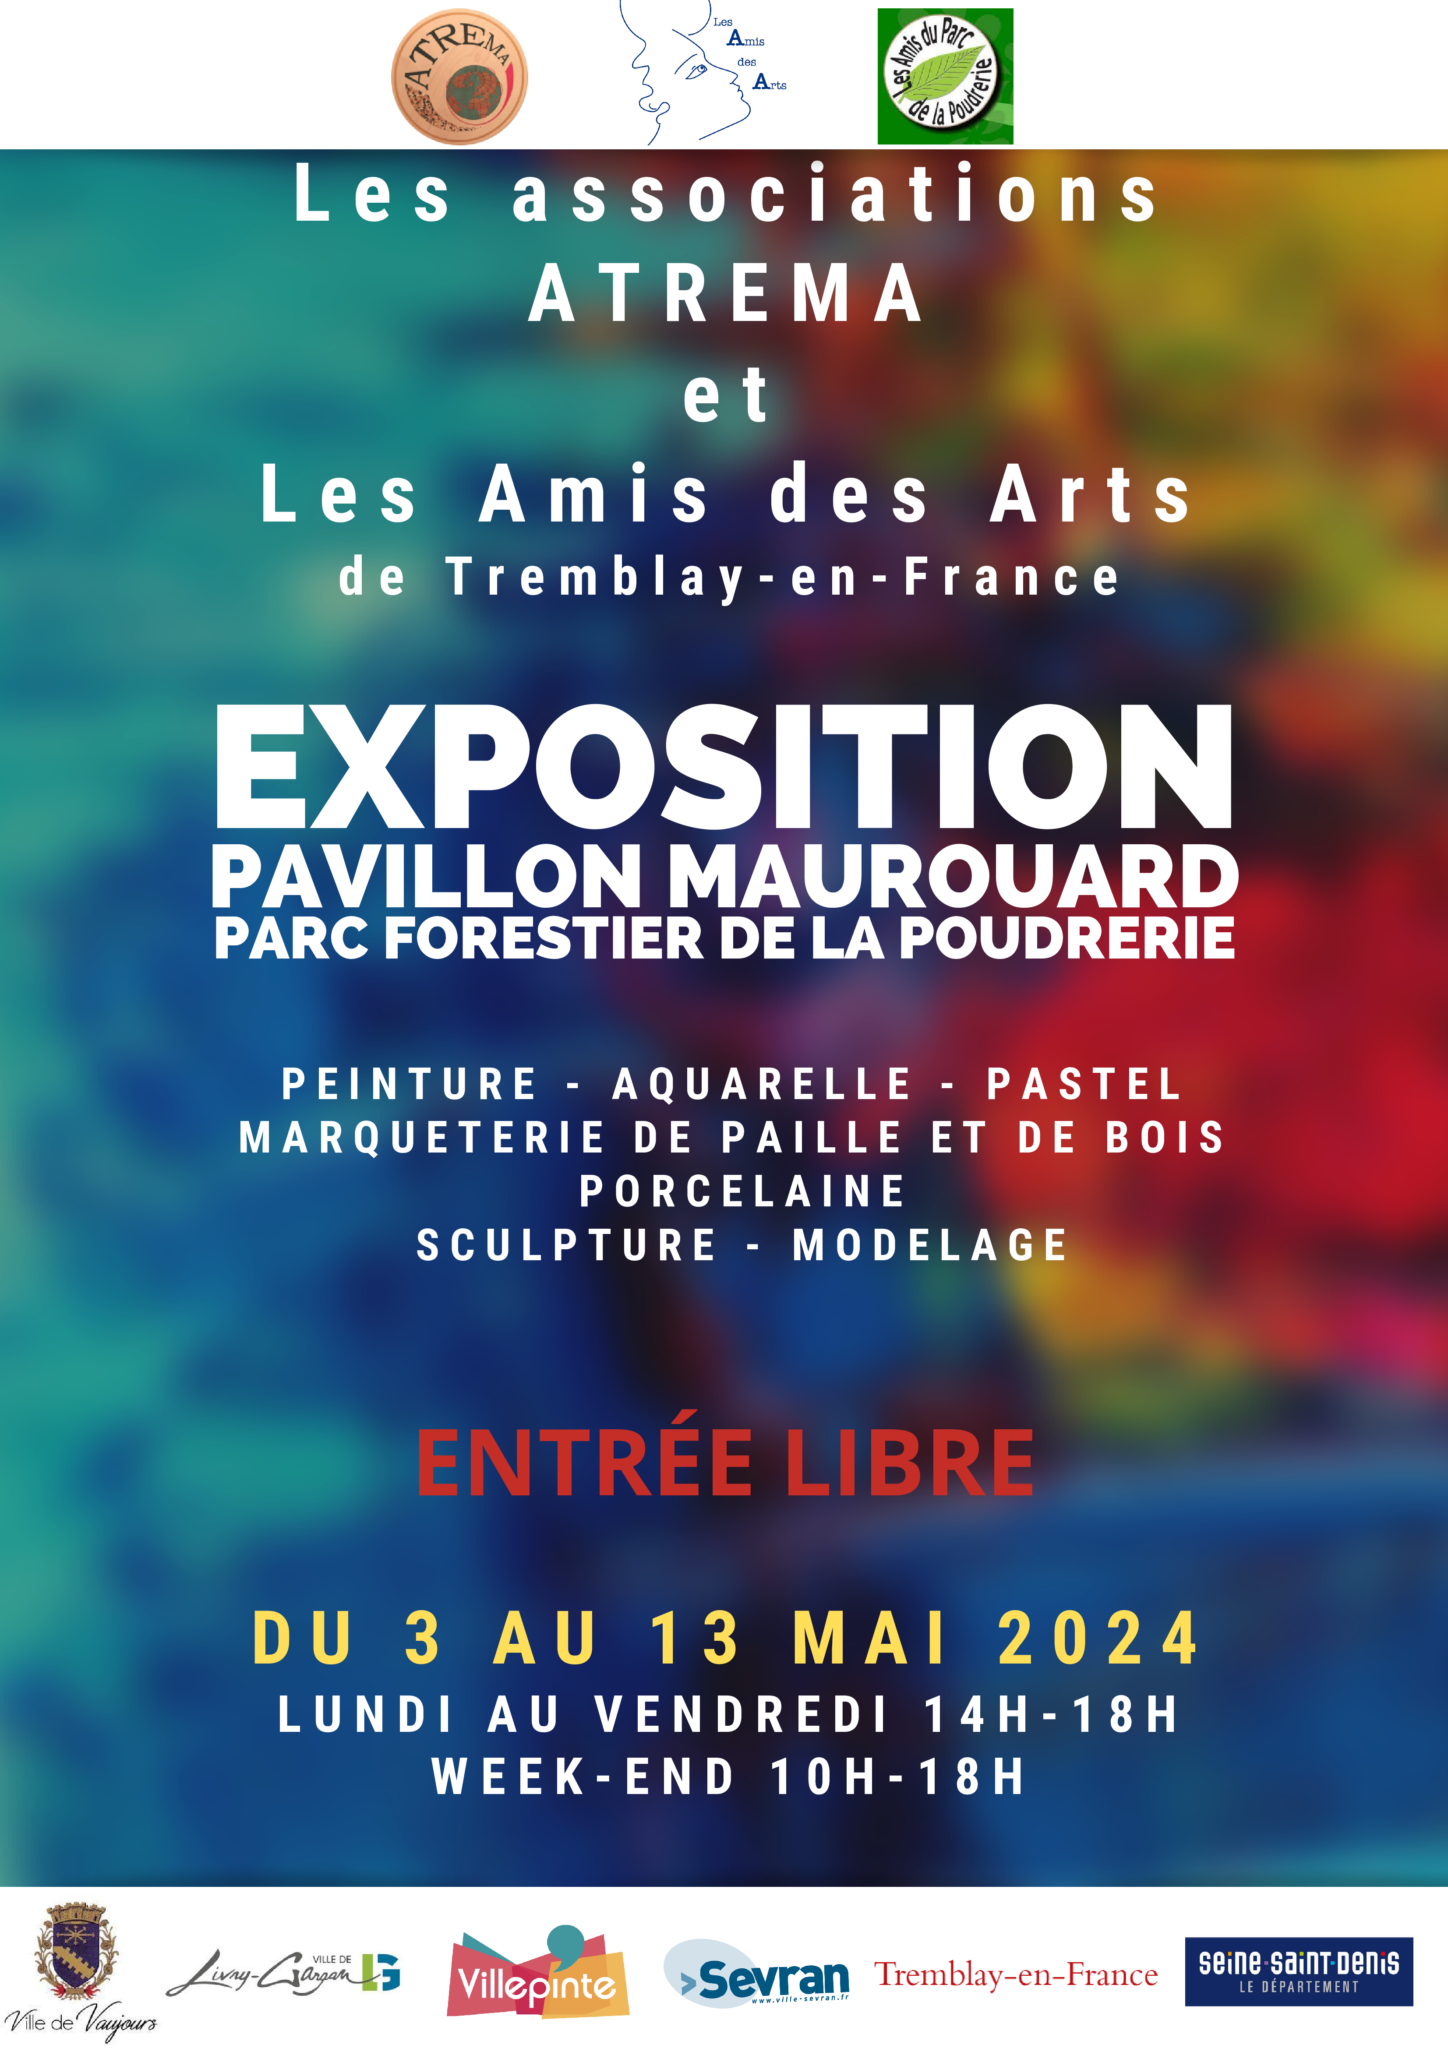 EXPOSITION DE L'ATREMA et des AMIS DES ARTS